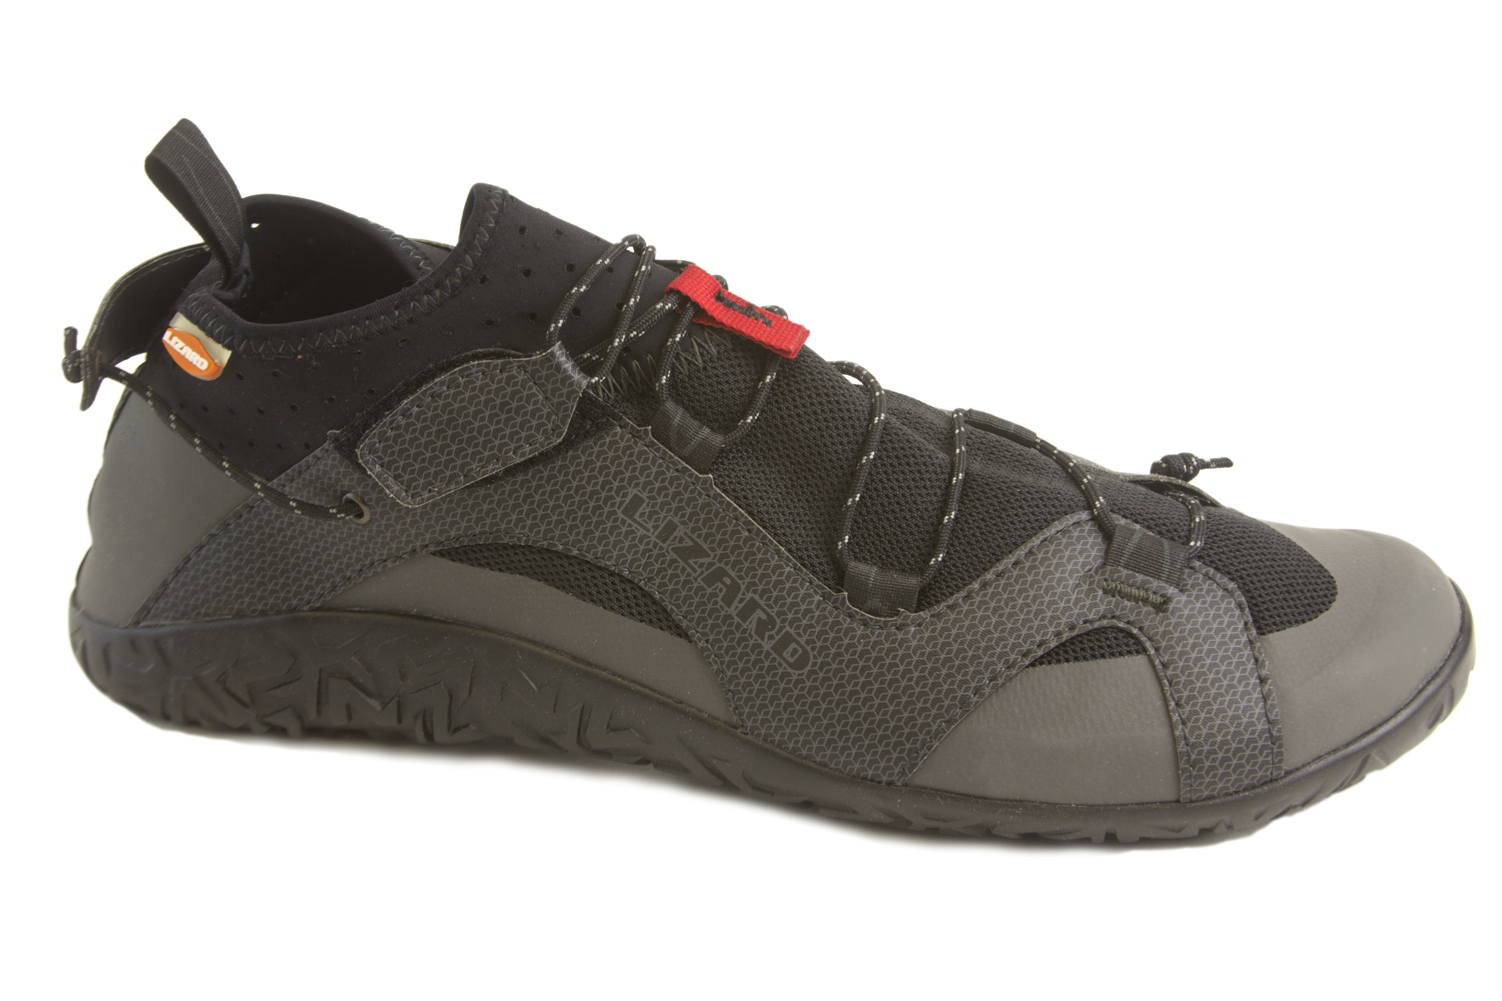 Lizard Footwear Men/'s Kross Amphibious Dark Grey Trail Shoes $109.95 NEW